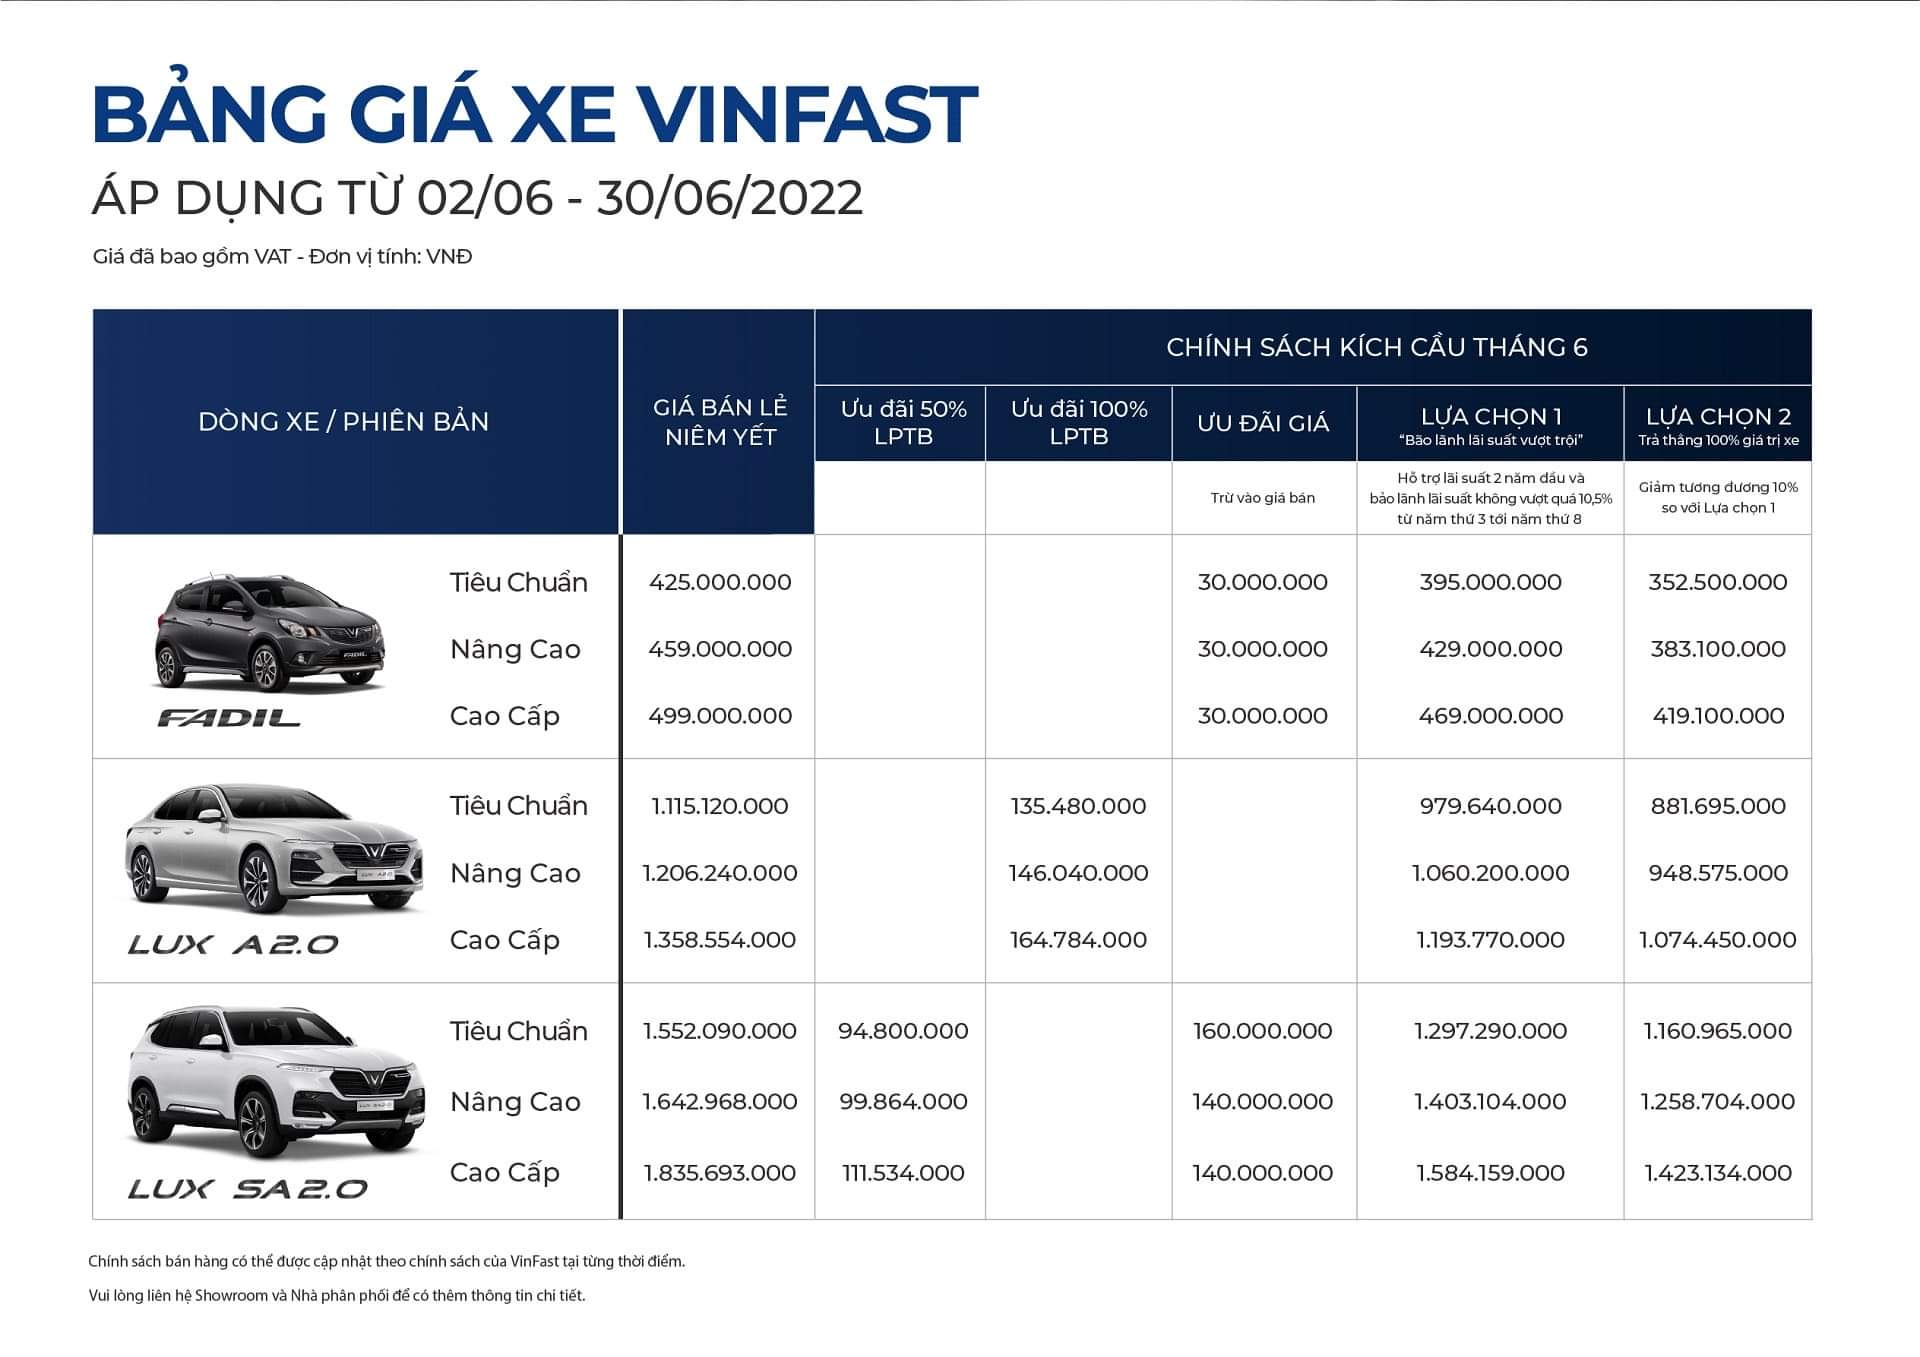 Thông báo chính sách bán hàng ô tô VinFast tháng 06/2022